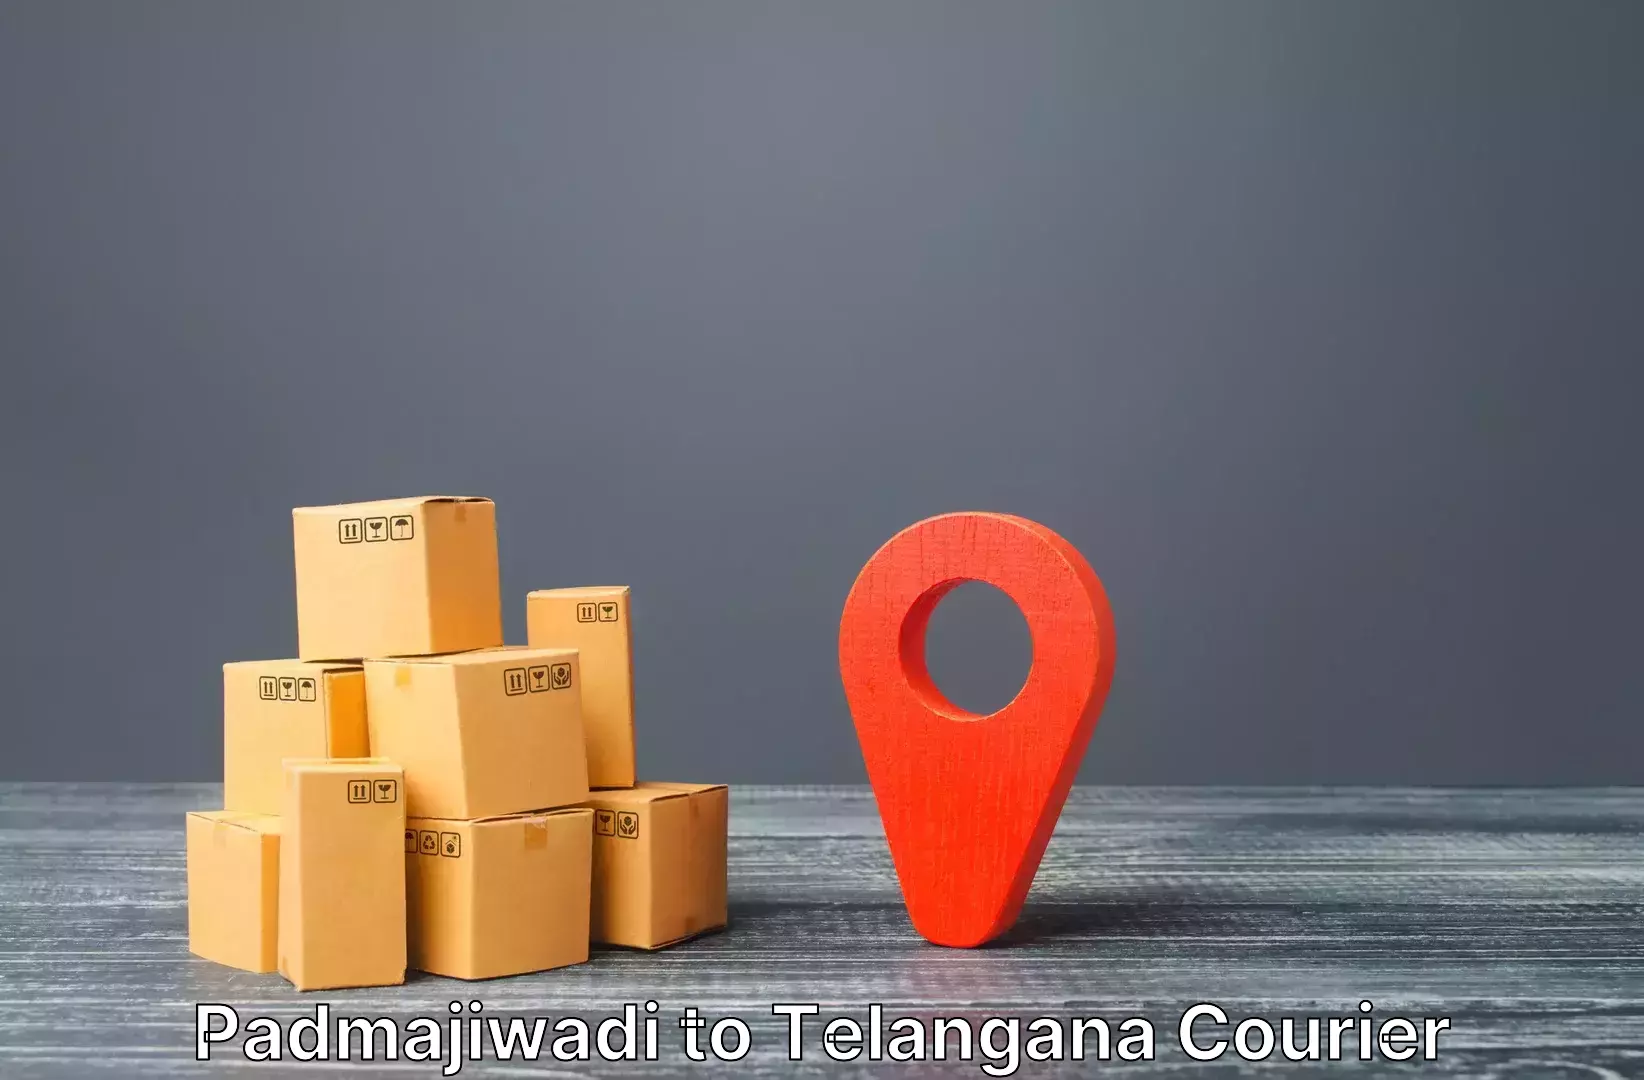 Baggage shipping advice Padmajiwadi to Ichoda